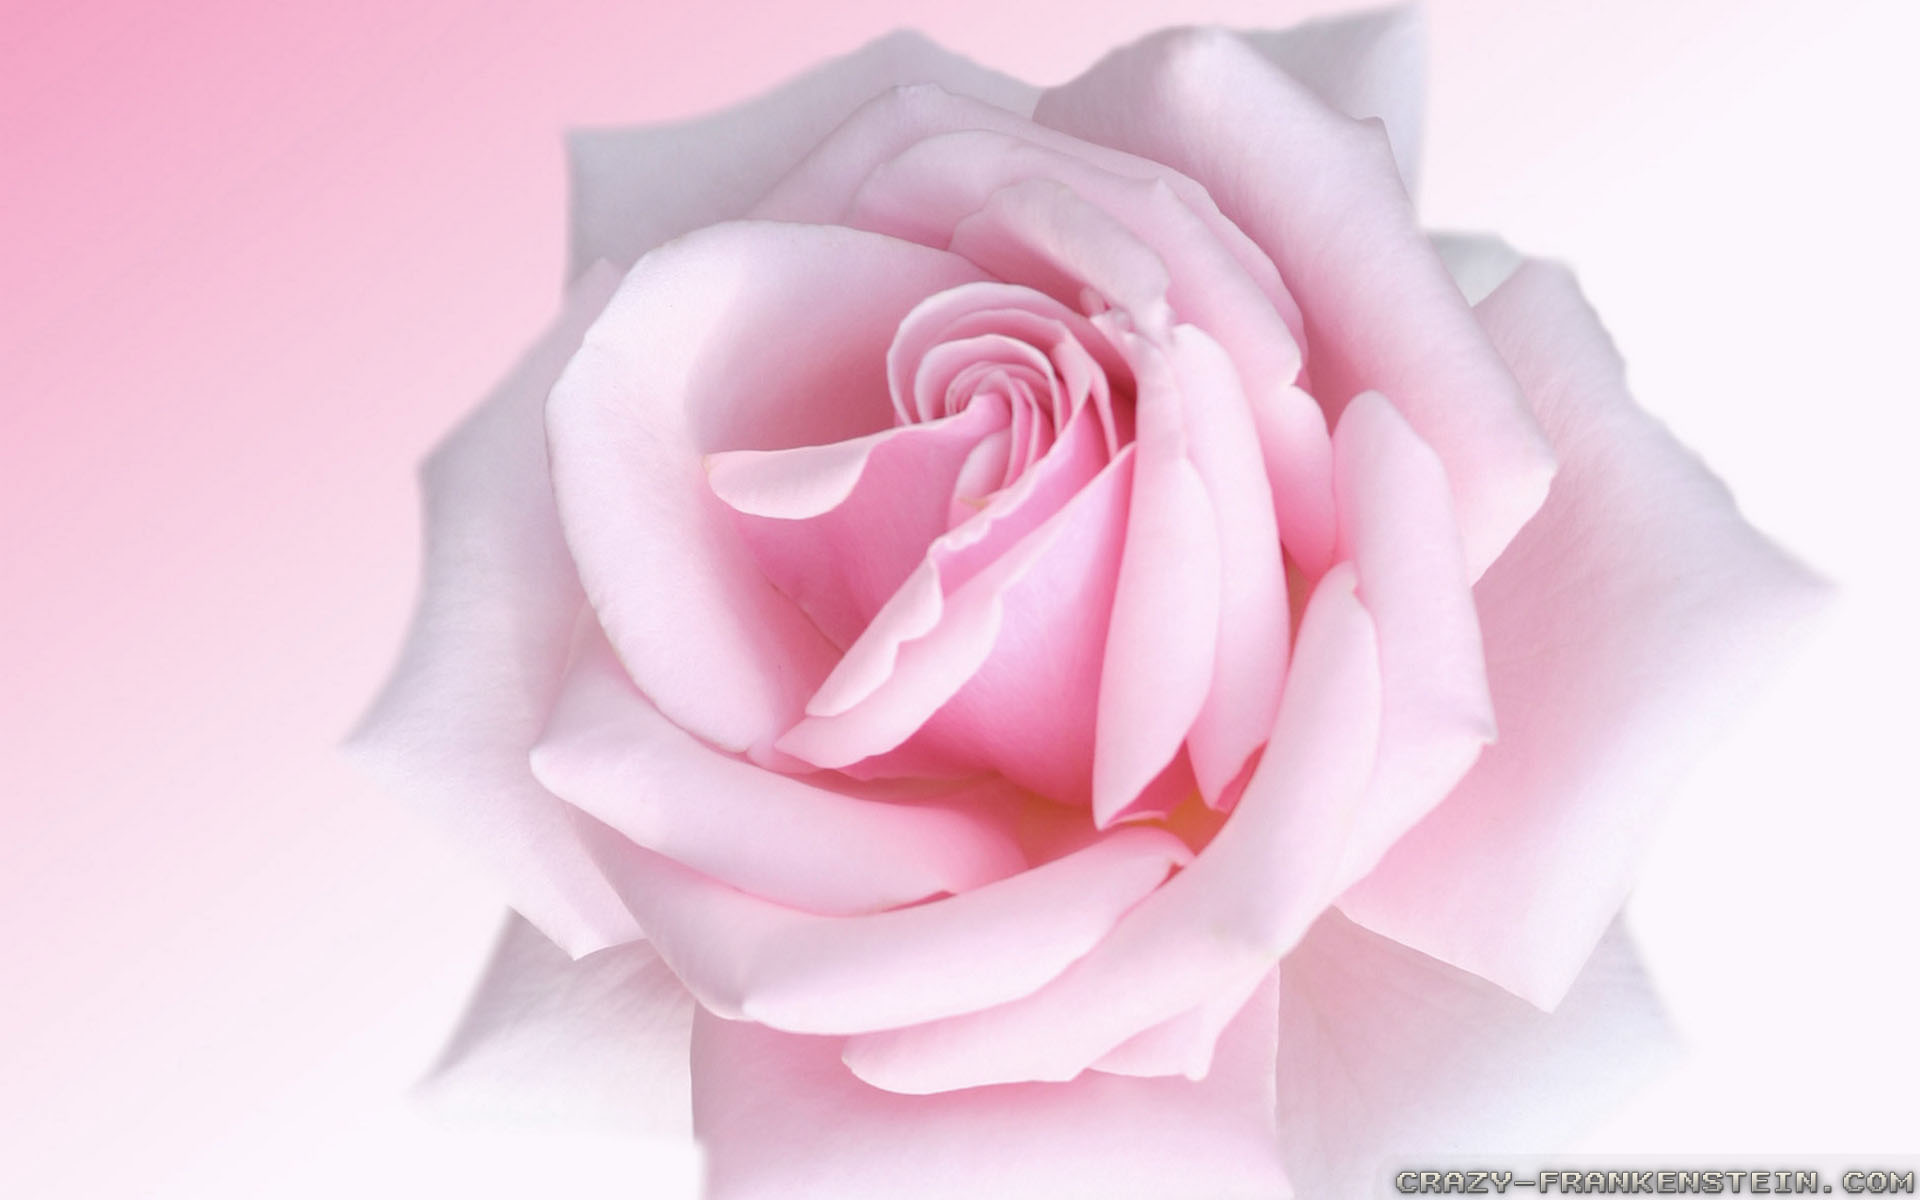 46+] Light Pink Roses Wallpaper - WallpaperSafari